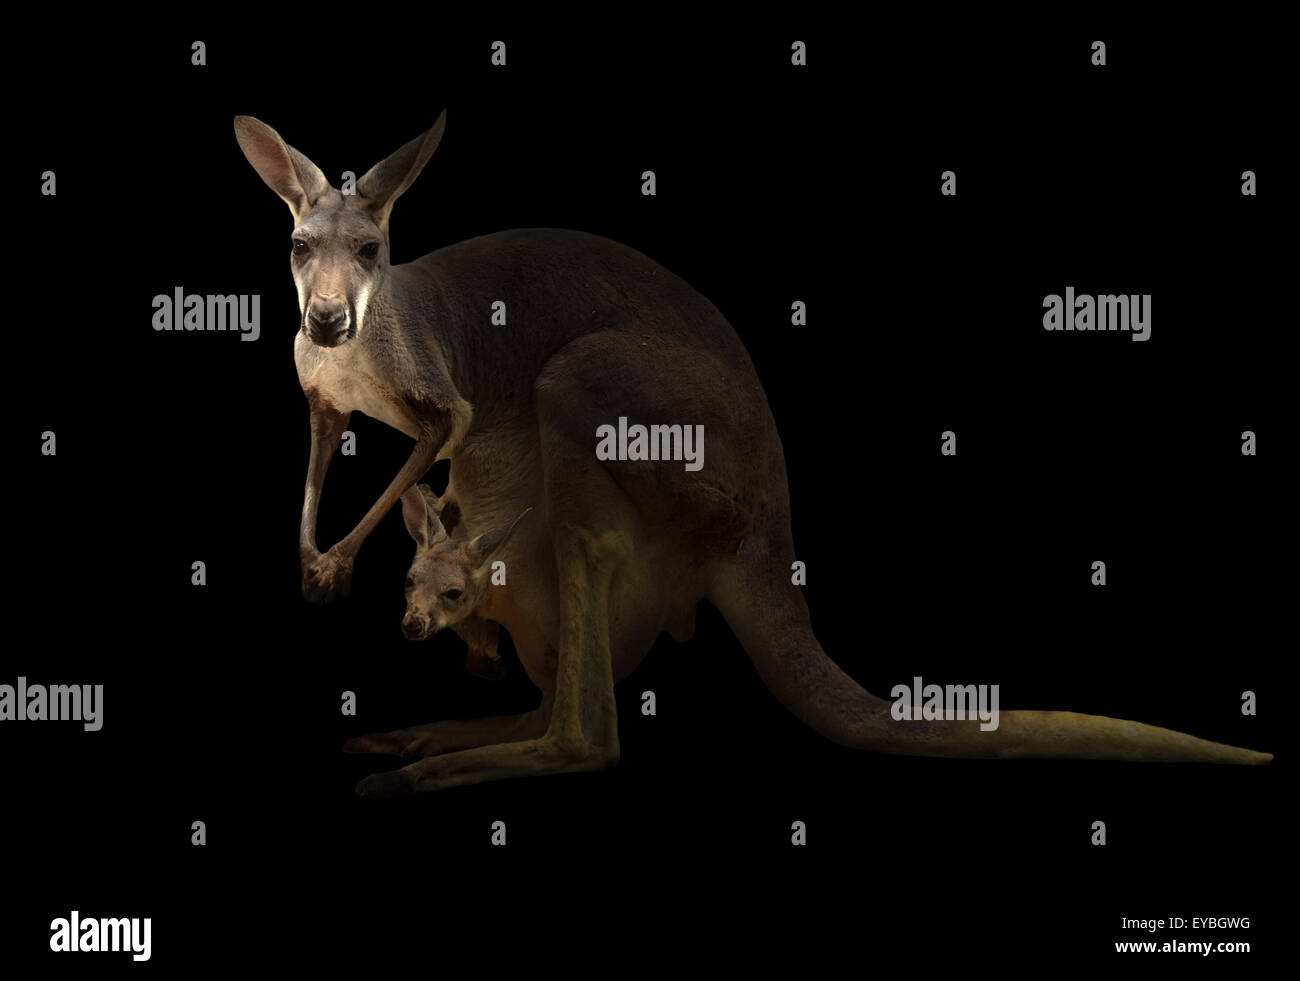 red kangaroo standing in the dark background Stock Photo